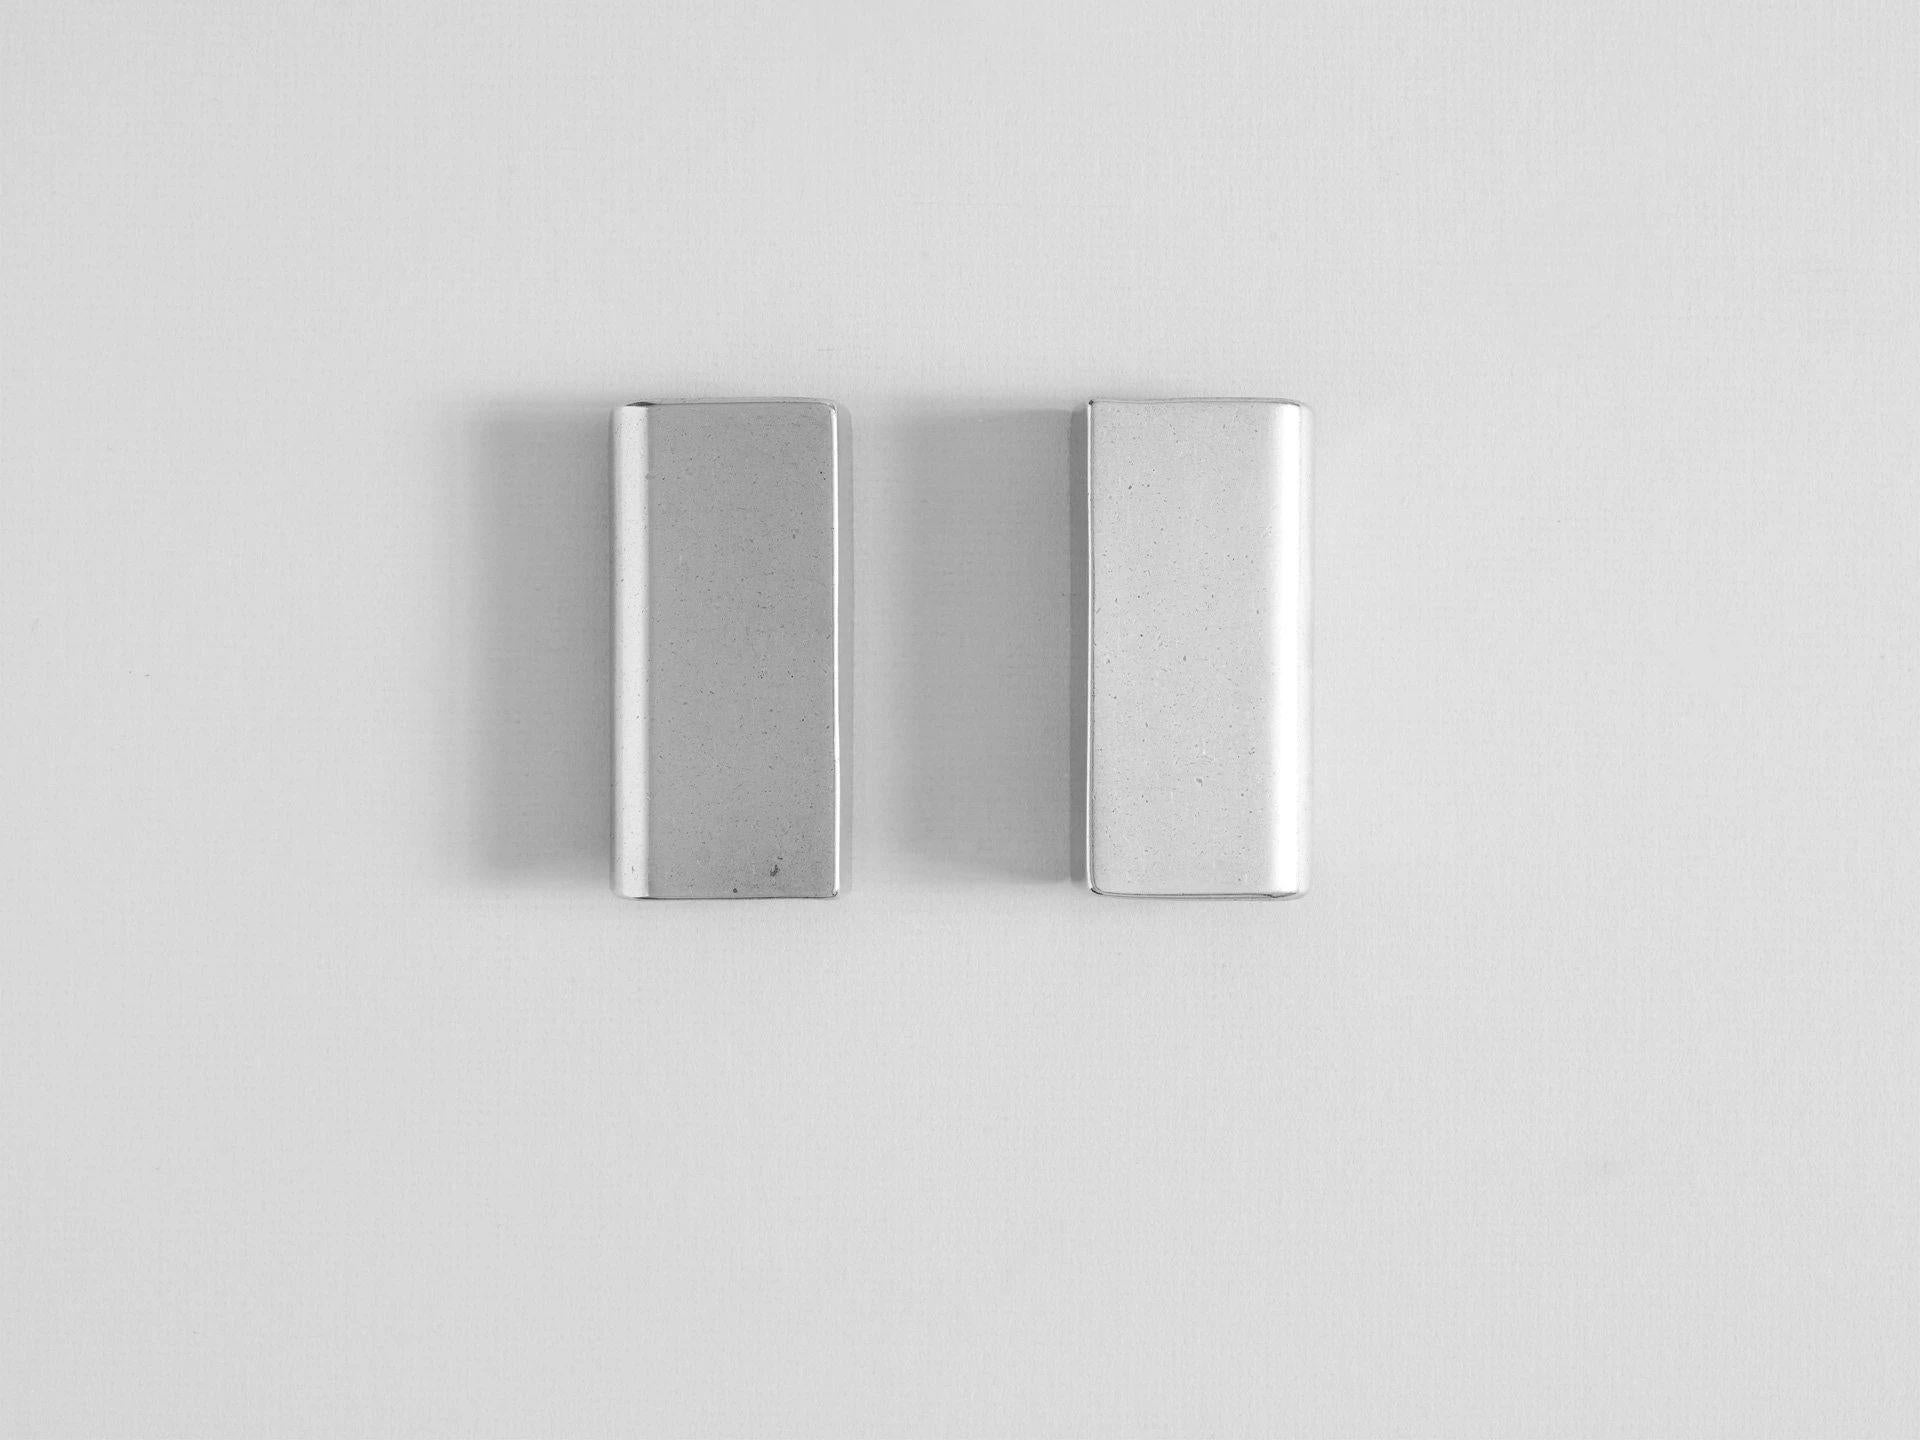 Mini-Cove-Griff aus Aluminium von Henry Wilson
Abmessungen: B 5 x T 2 x H 9 cm
MATERIALIEN: Alumium 

Jedes Stück wird im Sandgussverfahren hergestellt und mit Rumpeln bearbeitet. Ziehgriffe aus Aluminium werden in kleinen Chargen hergestellt, was